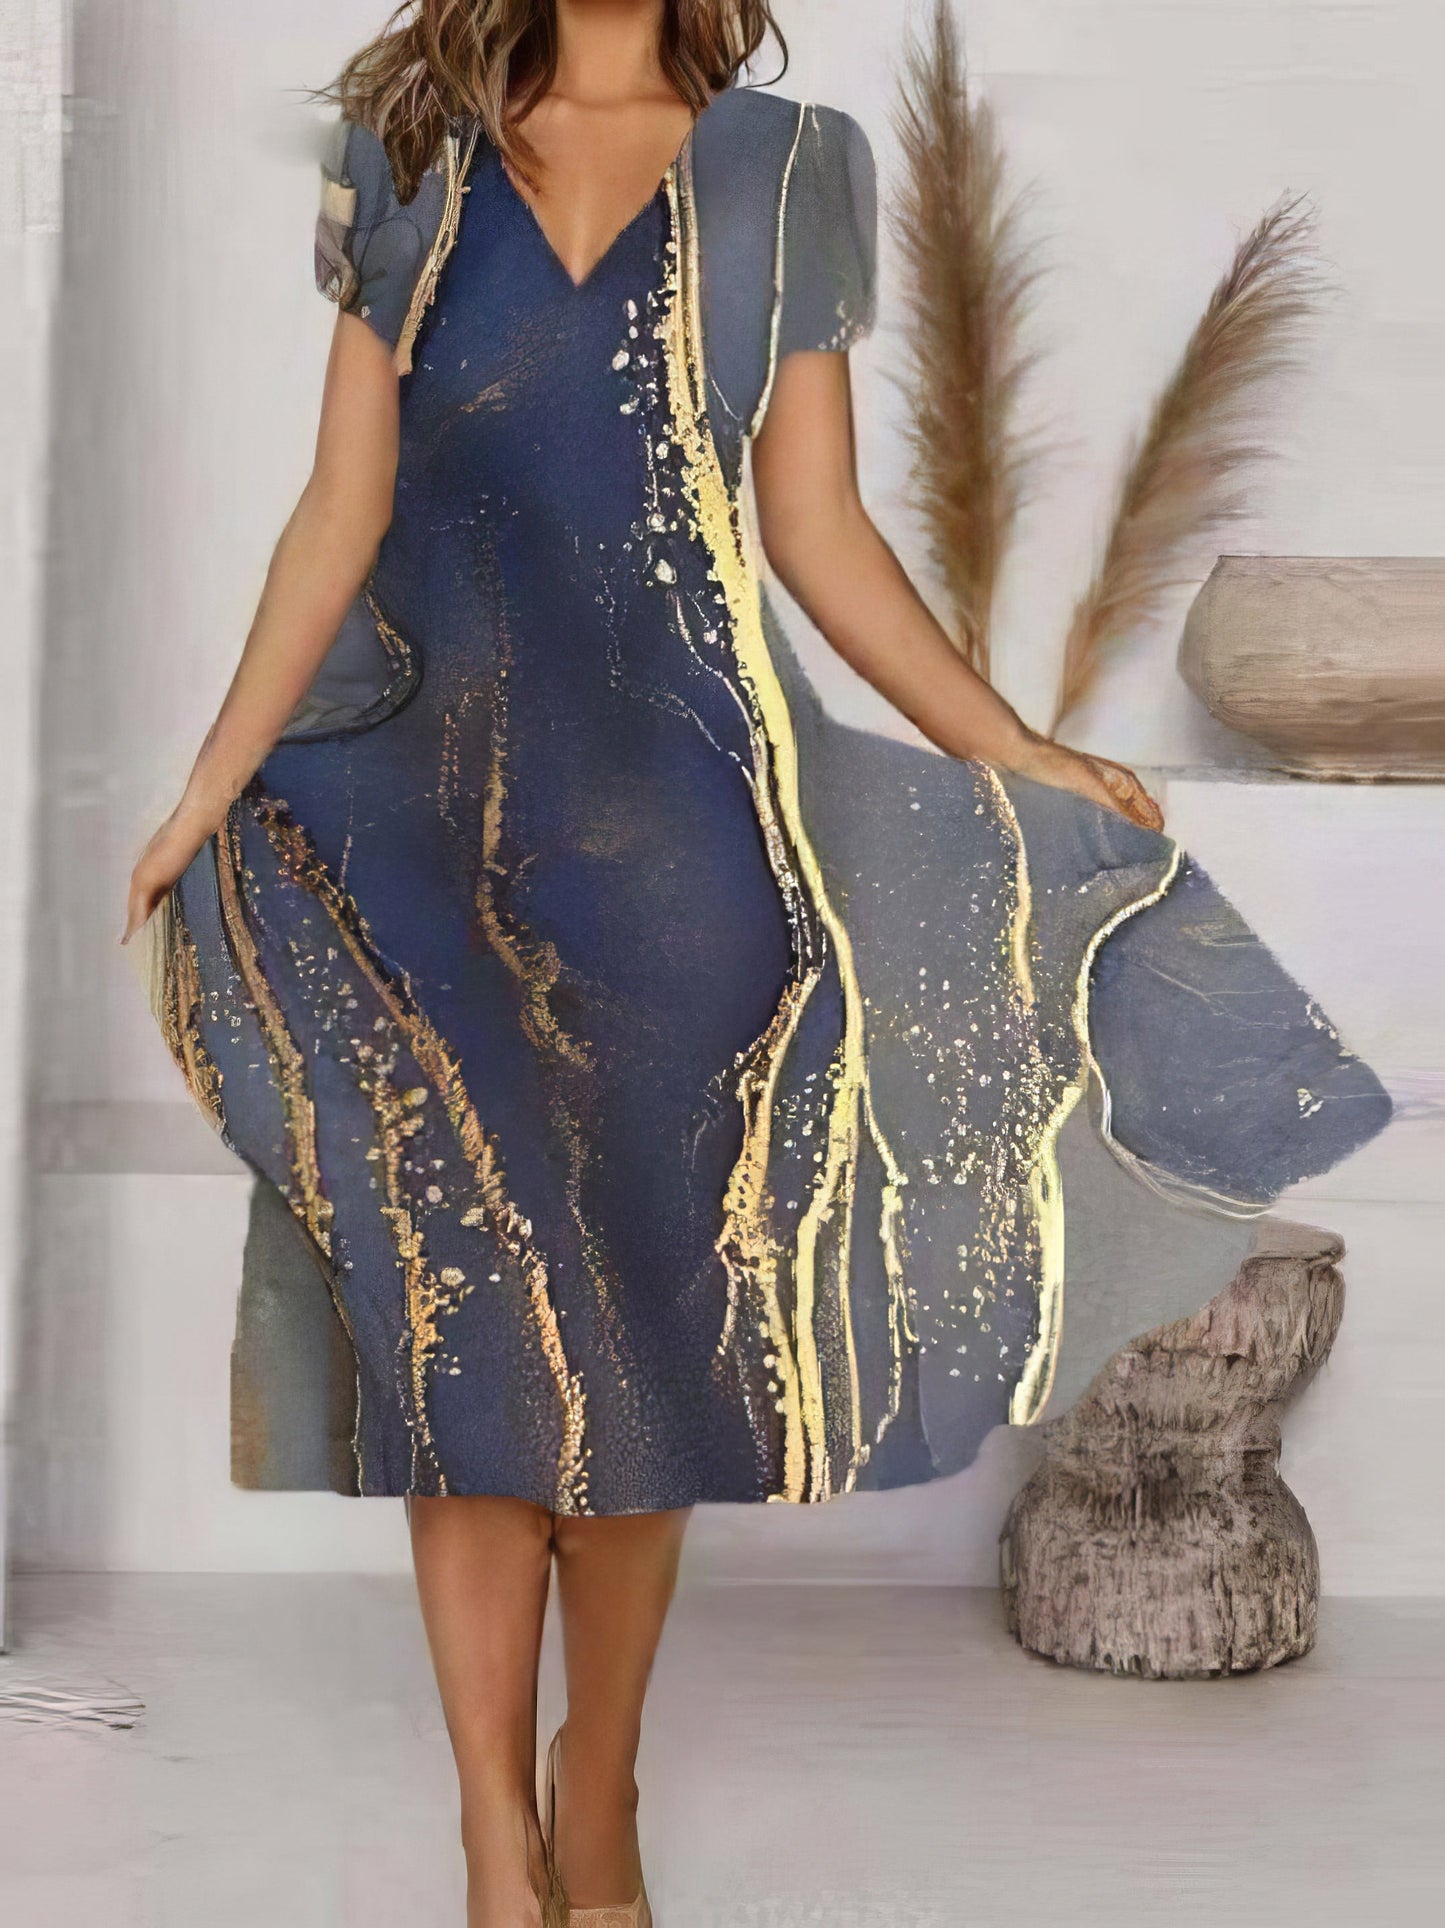 Midi Dresses - Art Print V-Neck Short Sleeve Dress - MsDressly